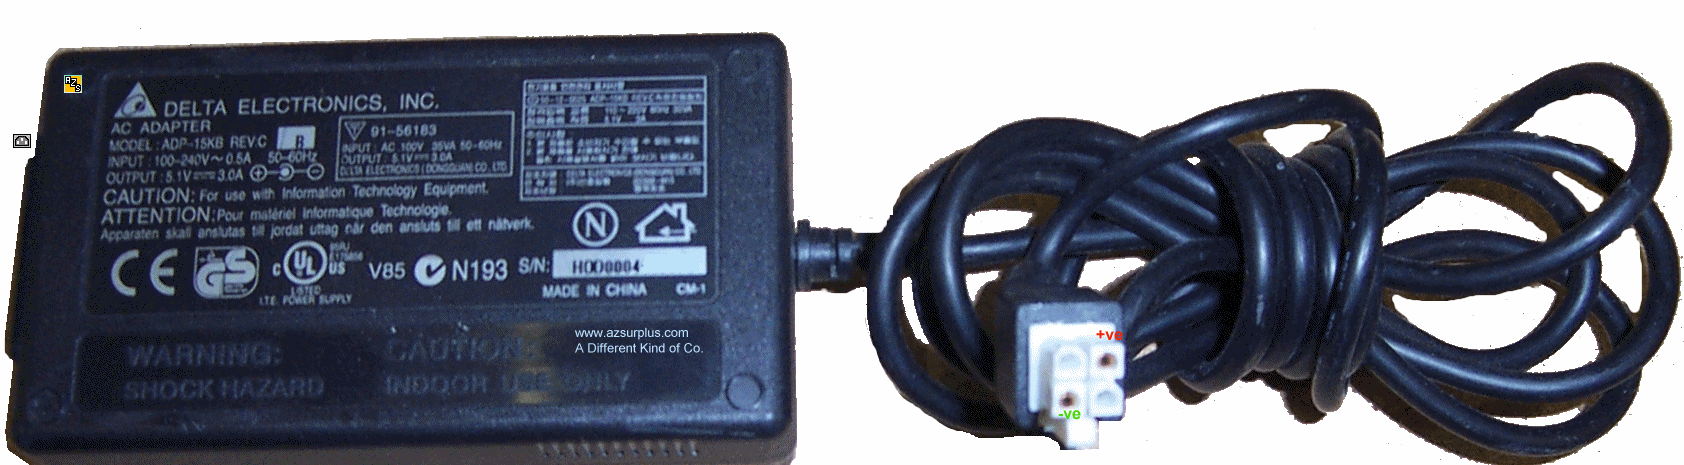 DELTA ADP-15KB 4 Pin Molex AC ADAPTER 5.1V DC 3.0A Network Switc